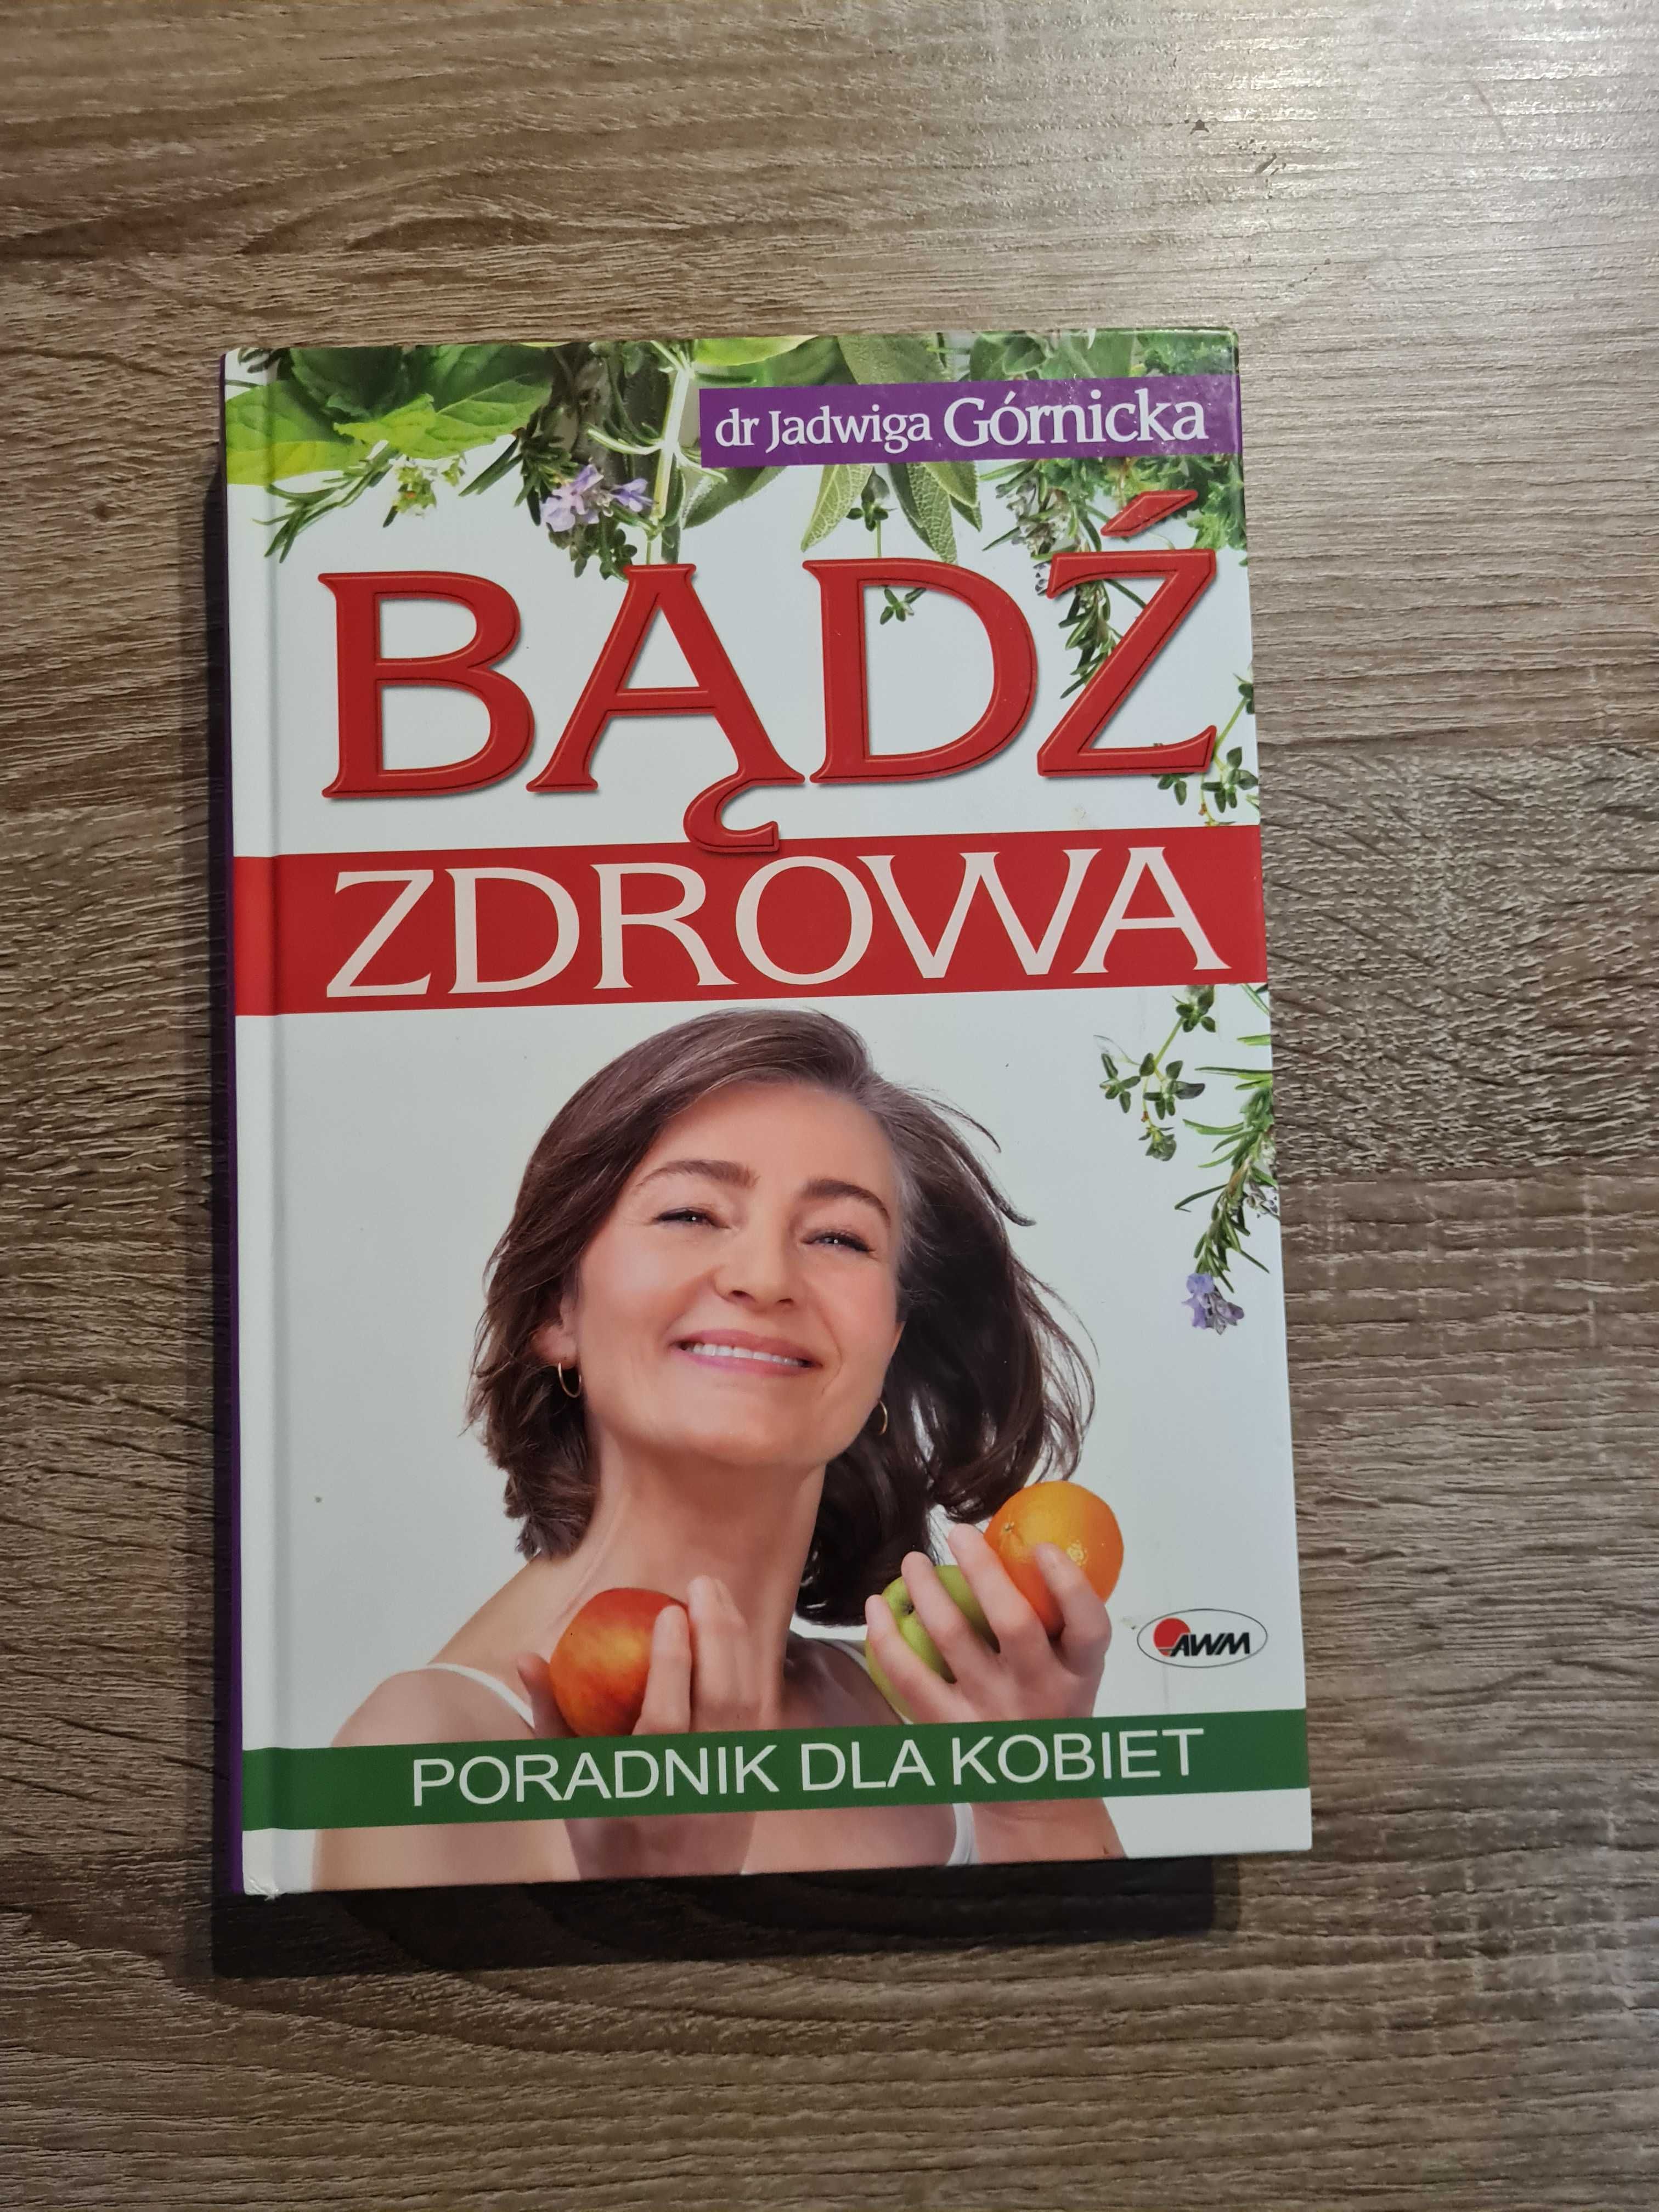 Bądź zdrowa dr Jadwiga Górnicka